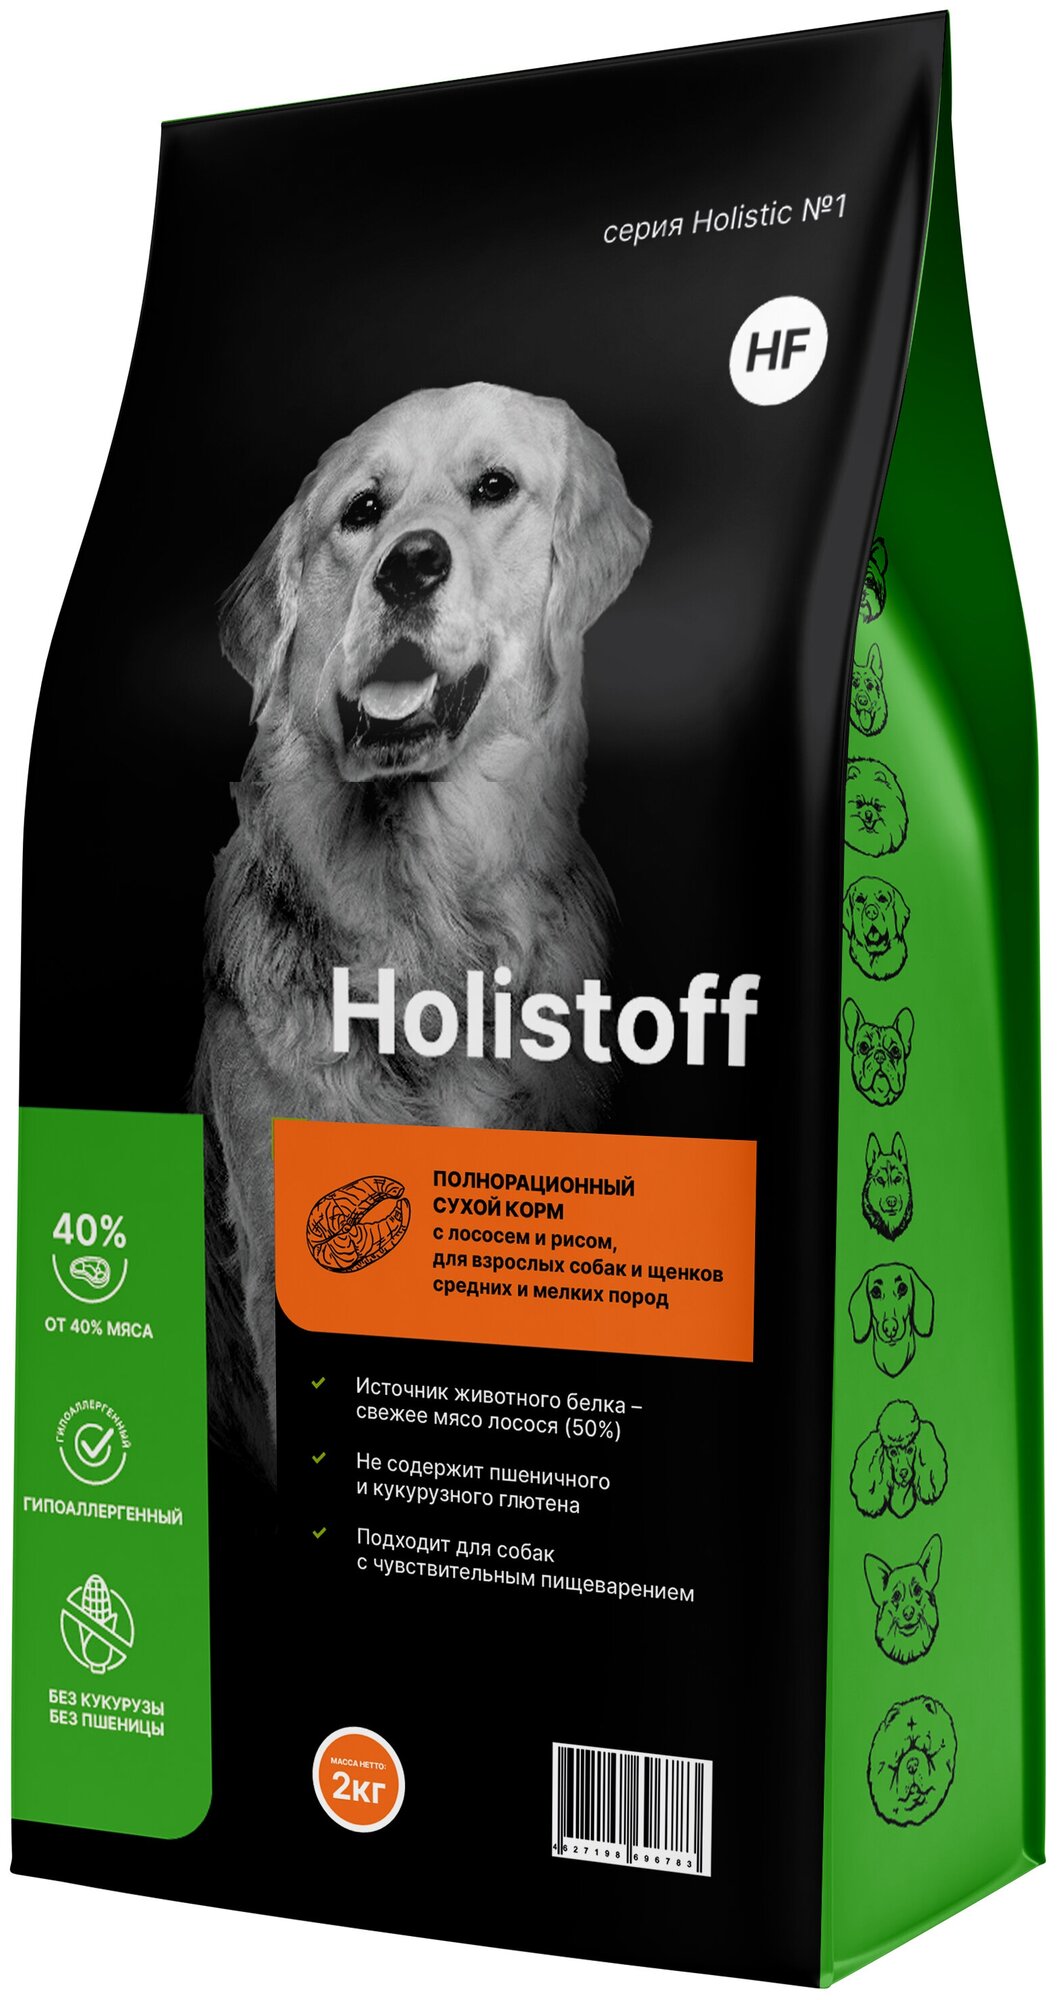 Holistoff сухой корм для взрослых собак и щенков средних и мелких пород с лососем и рисом, 2 кг,